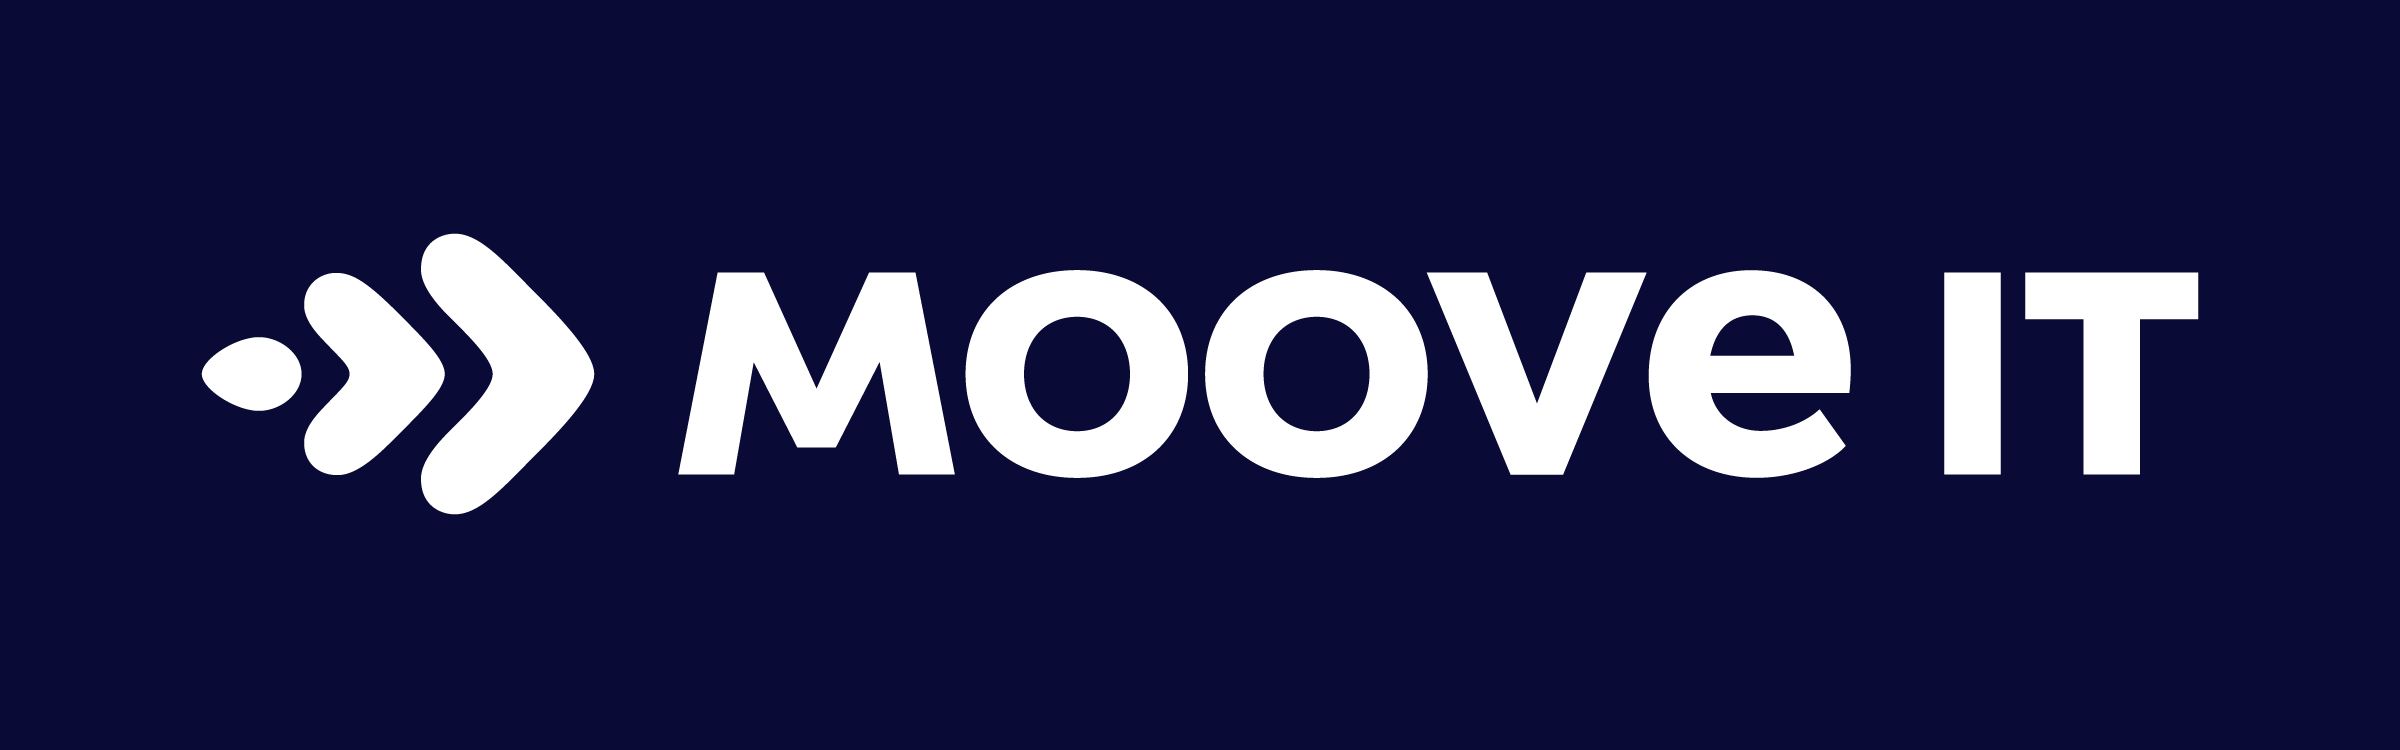 Moove It website